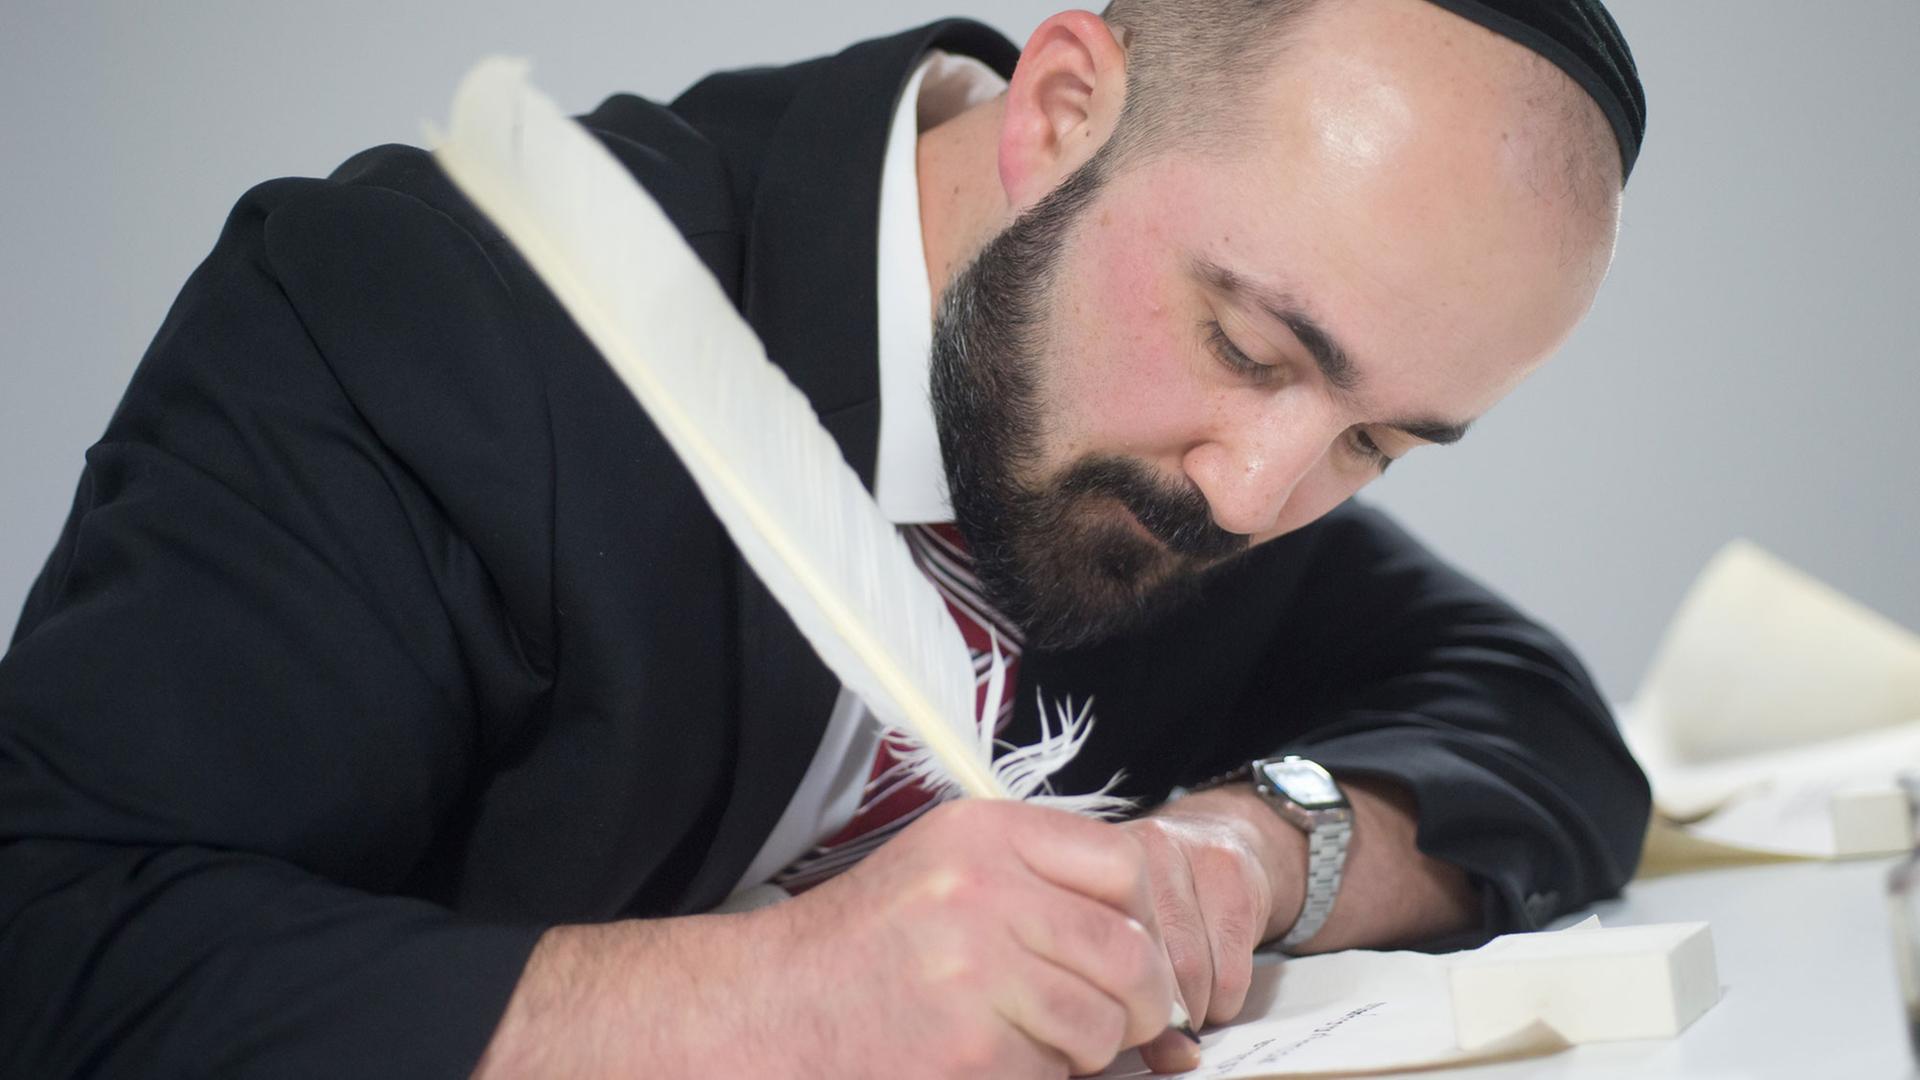 Der Berliner Rabbiner Reuven Yaacobov demonstriert am 03.04.2014 im Jüdischen Museum Berlin in der Ausstellung "Die Erschaffung der Welt", wie eine Thorarolle gemäß der überlieferten Vorschriften geschrieben wird.